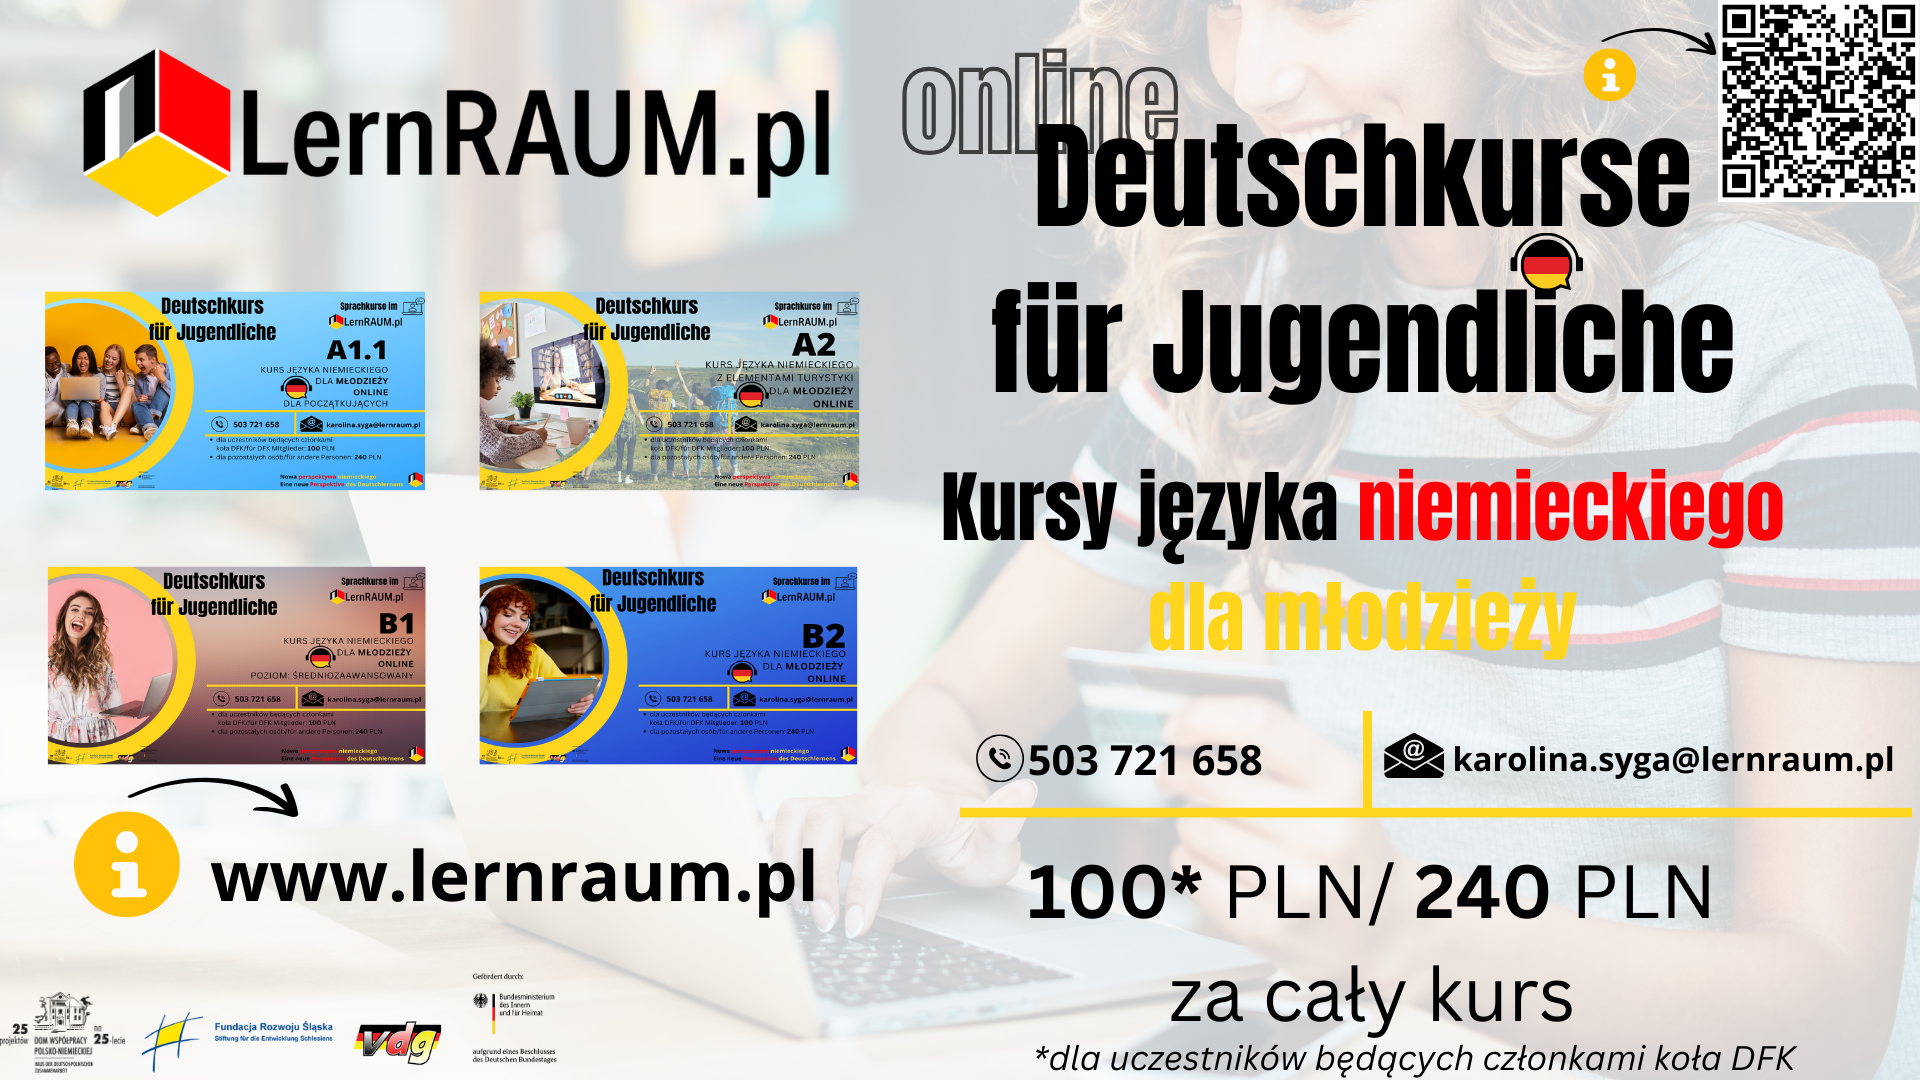 Kursy języka niemieckiego dla młodzieży ONLINE w ramach projektu LernRAUM.pl